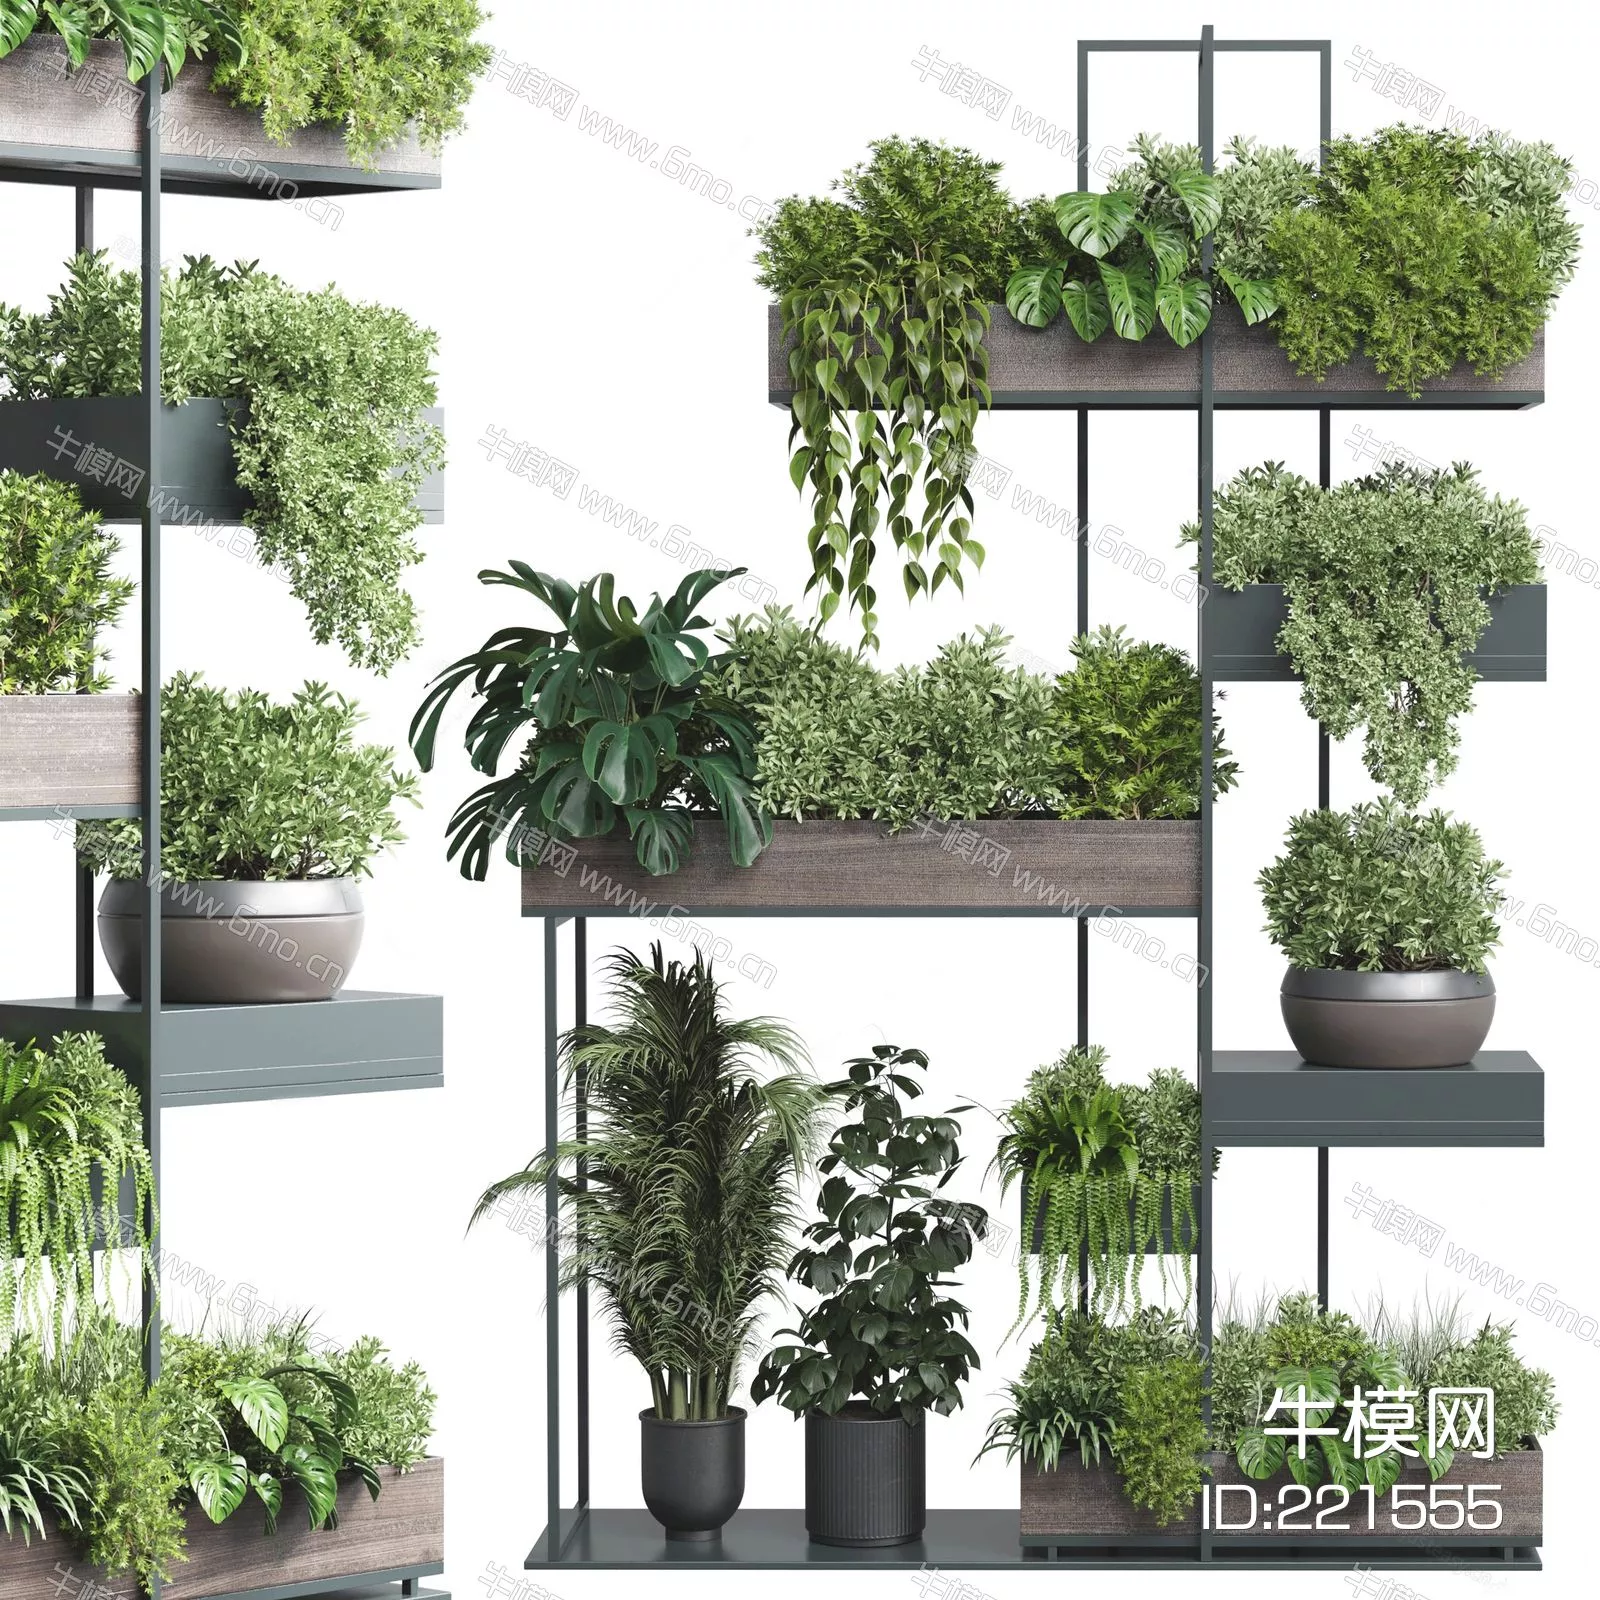 MODERN POTTED PLANT - SKETCHUP 3D MODEL - ENSCAPE - 221555